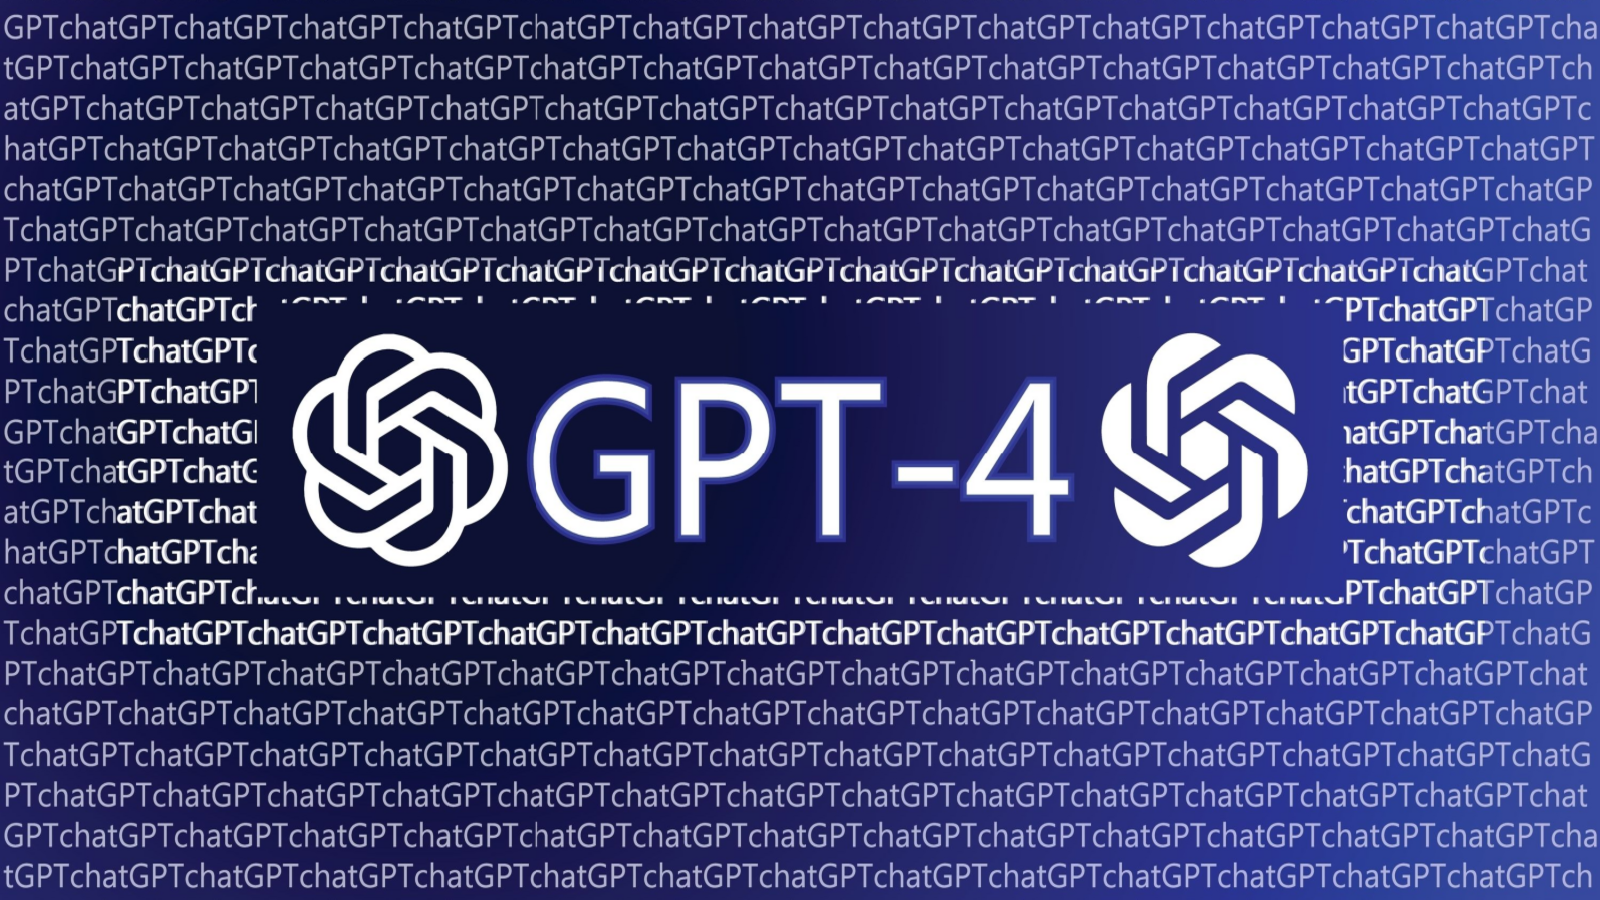 GPT-4 Turbo Entegrasyonu ile Copilot Daha Hızlı Kod Üretiyor ve Hata Ayıklamada Daha Başarılı